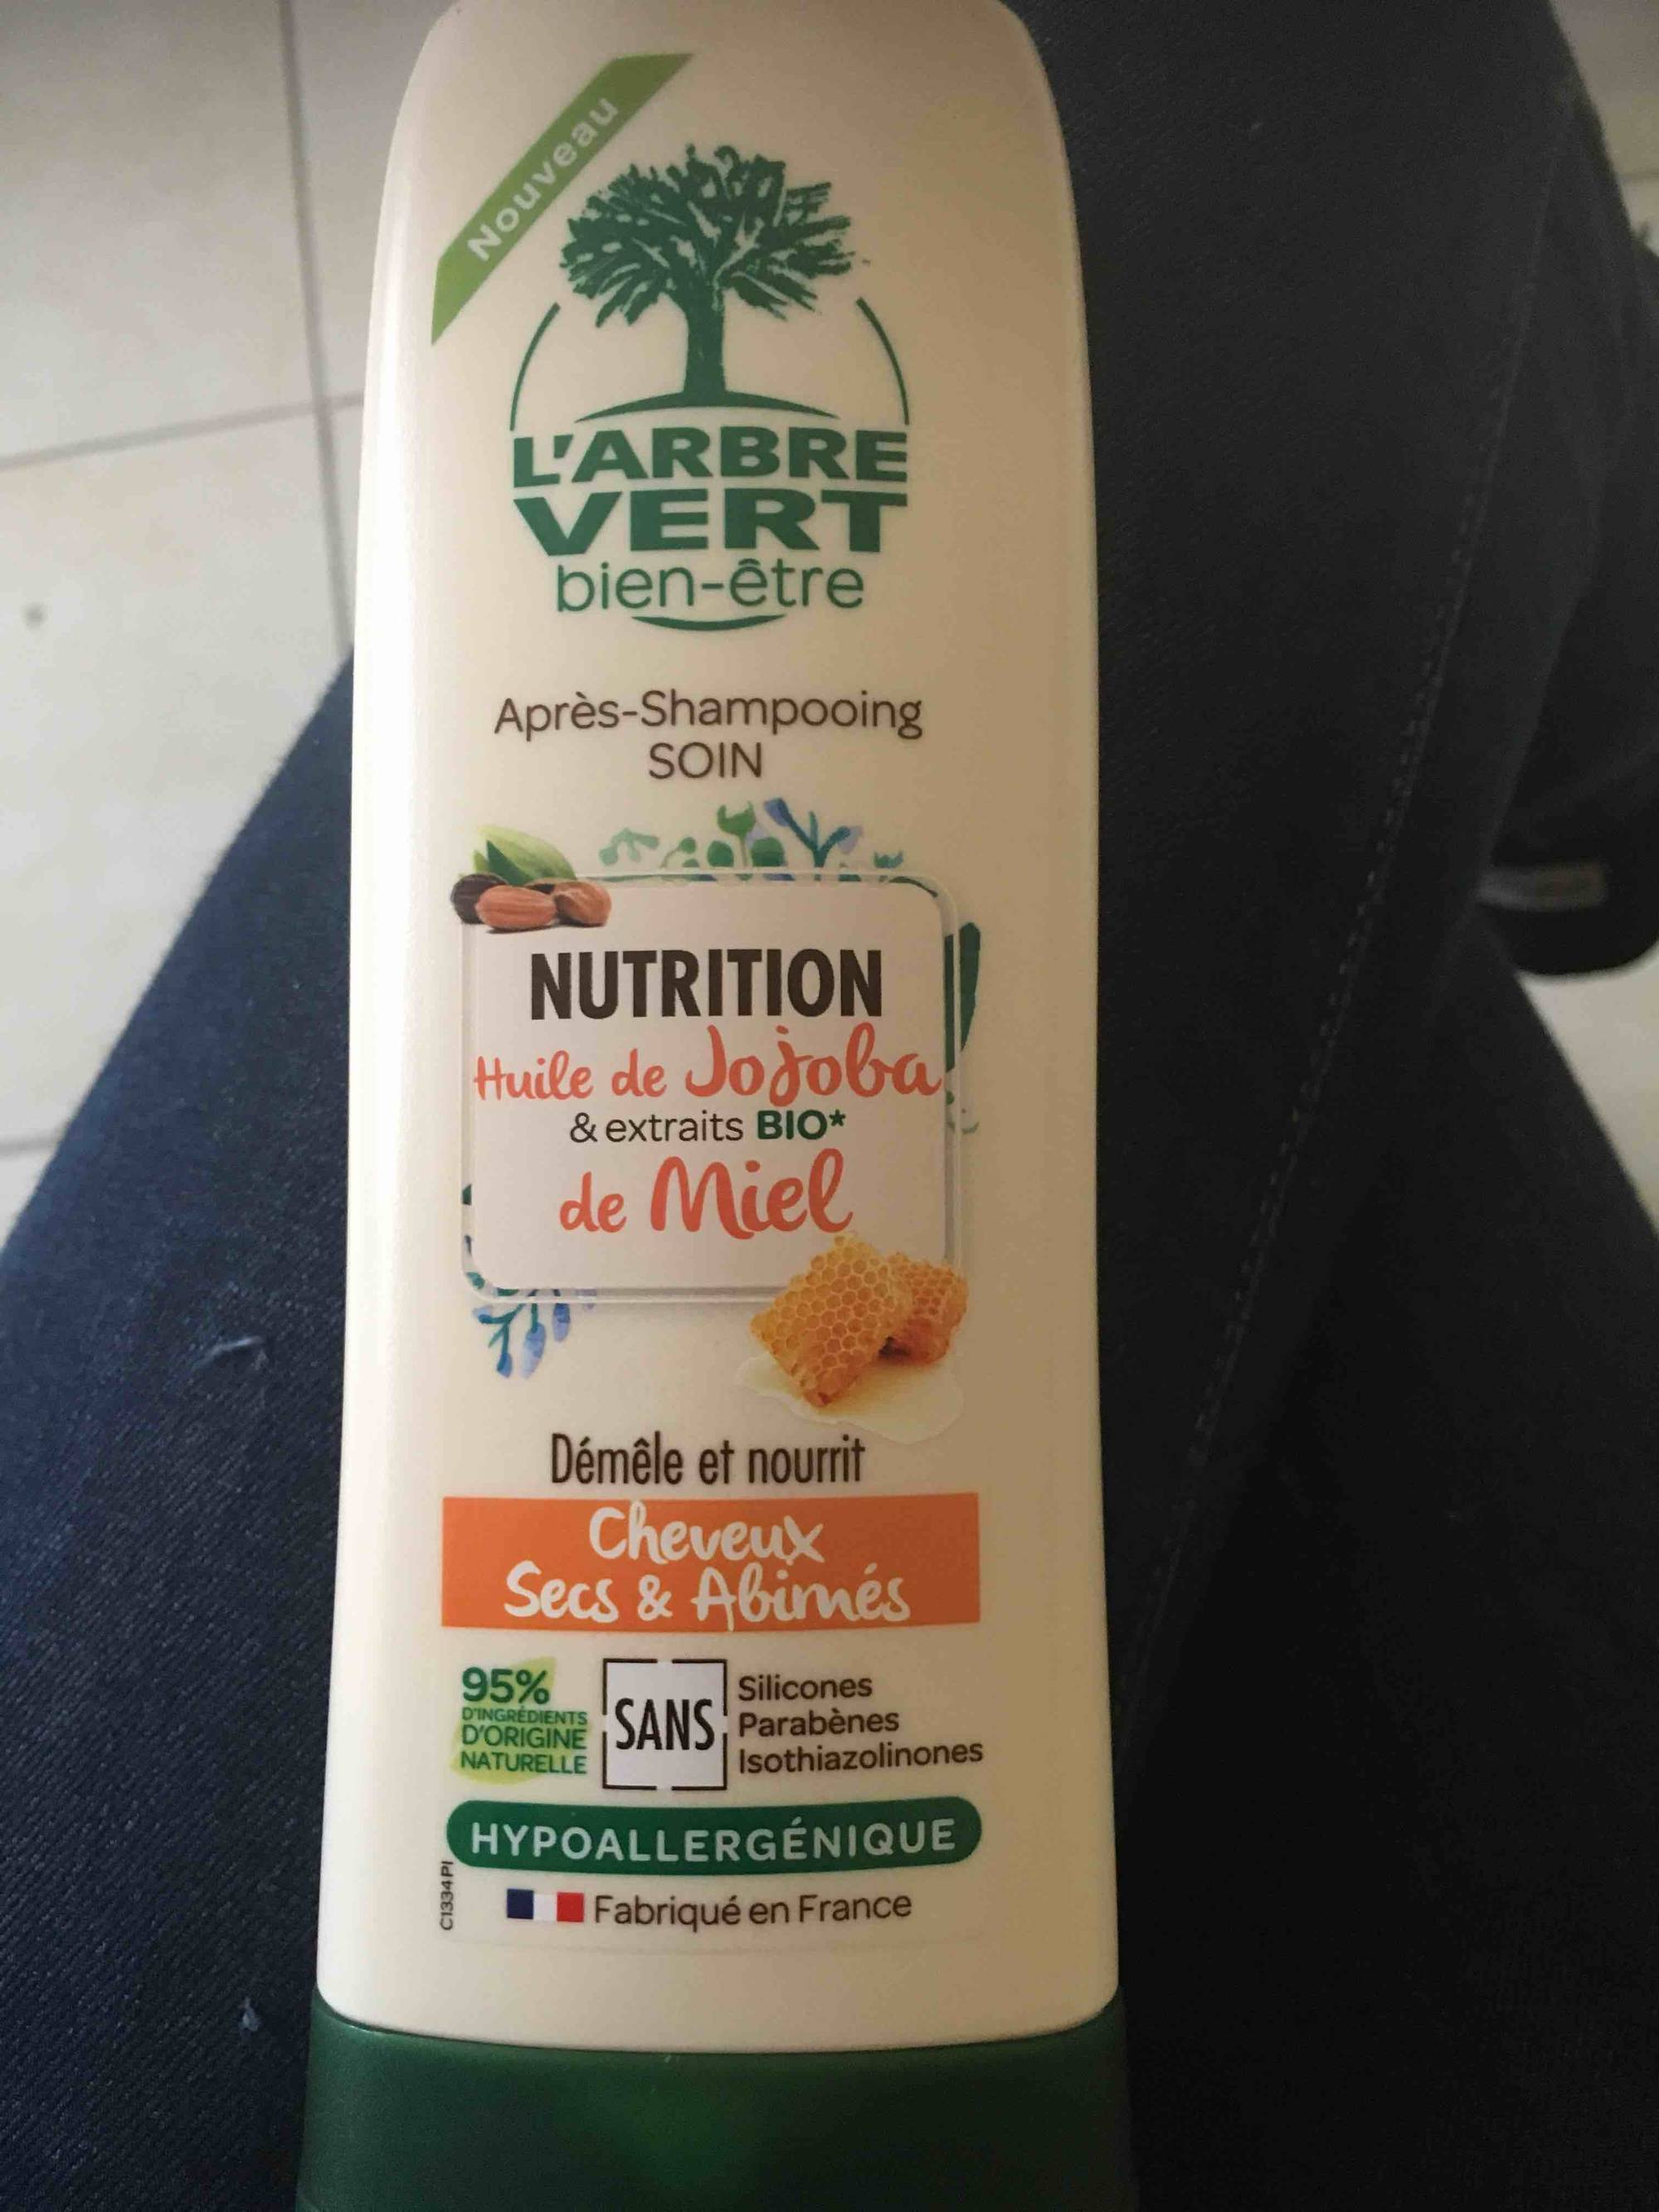 L'ARBRE VERT - Après-shampooing nutrition